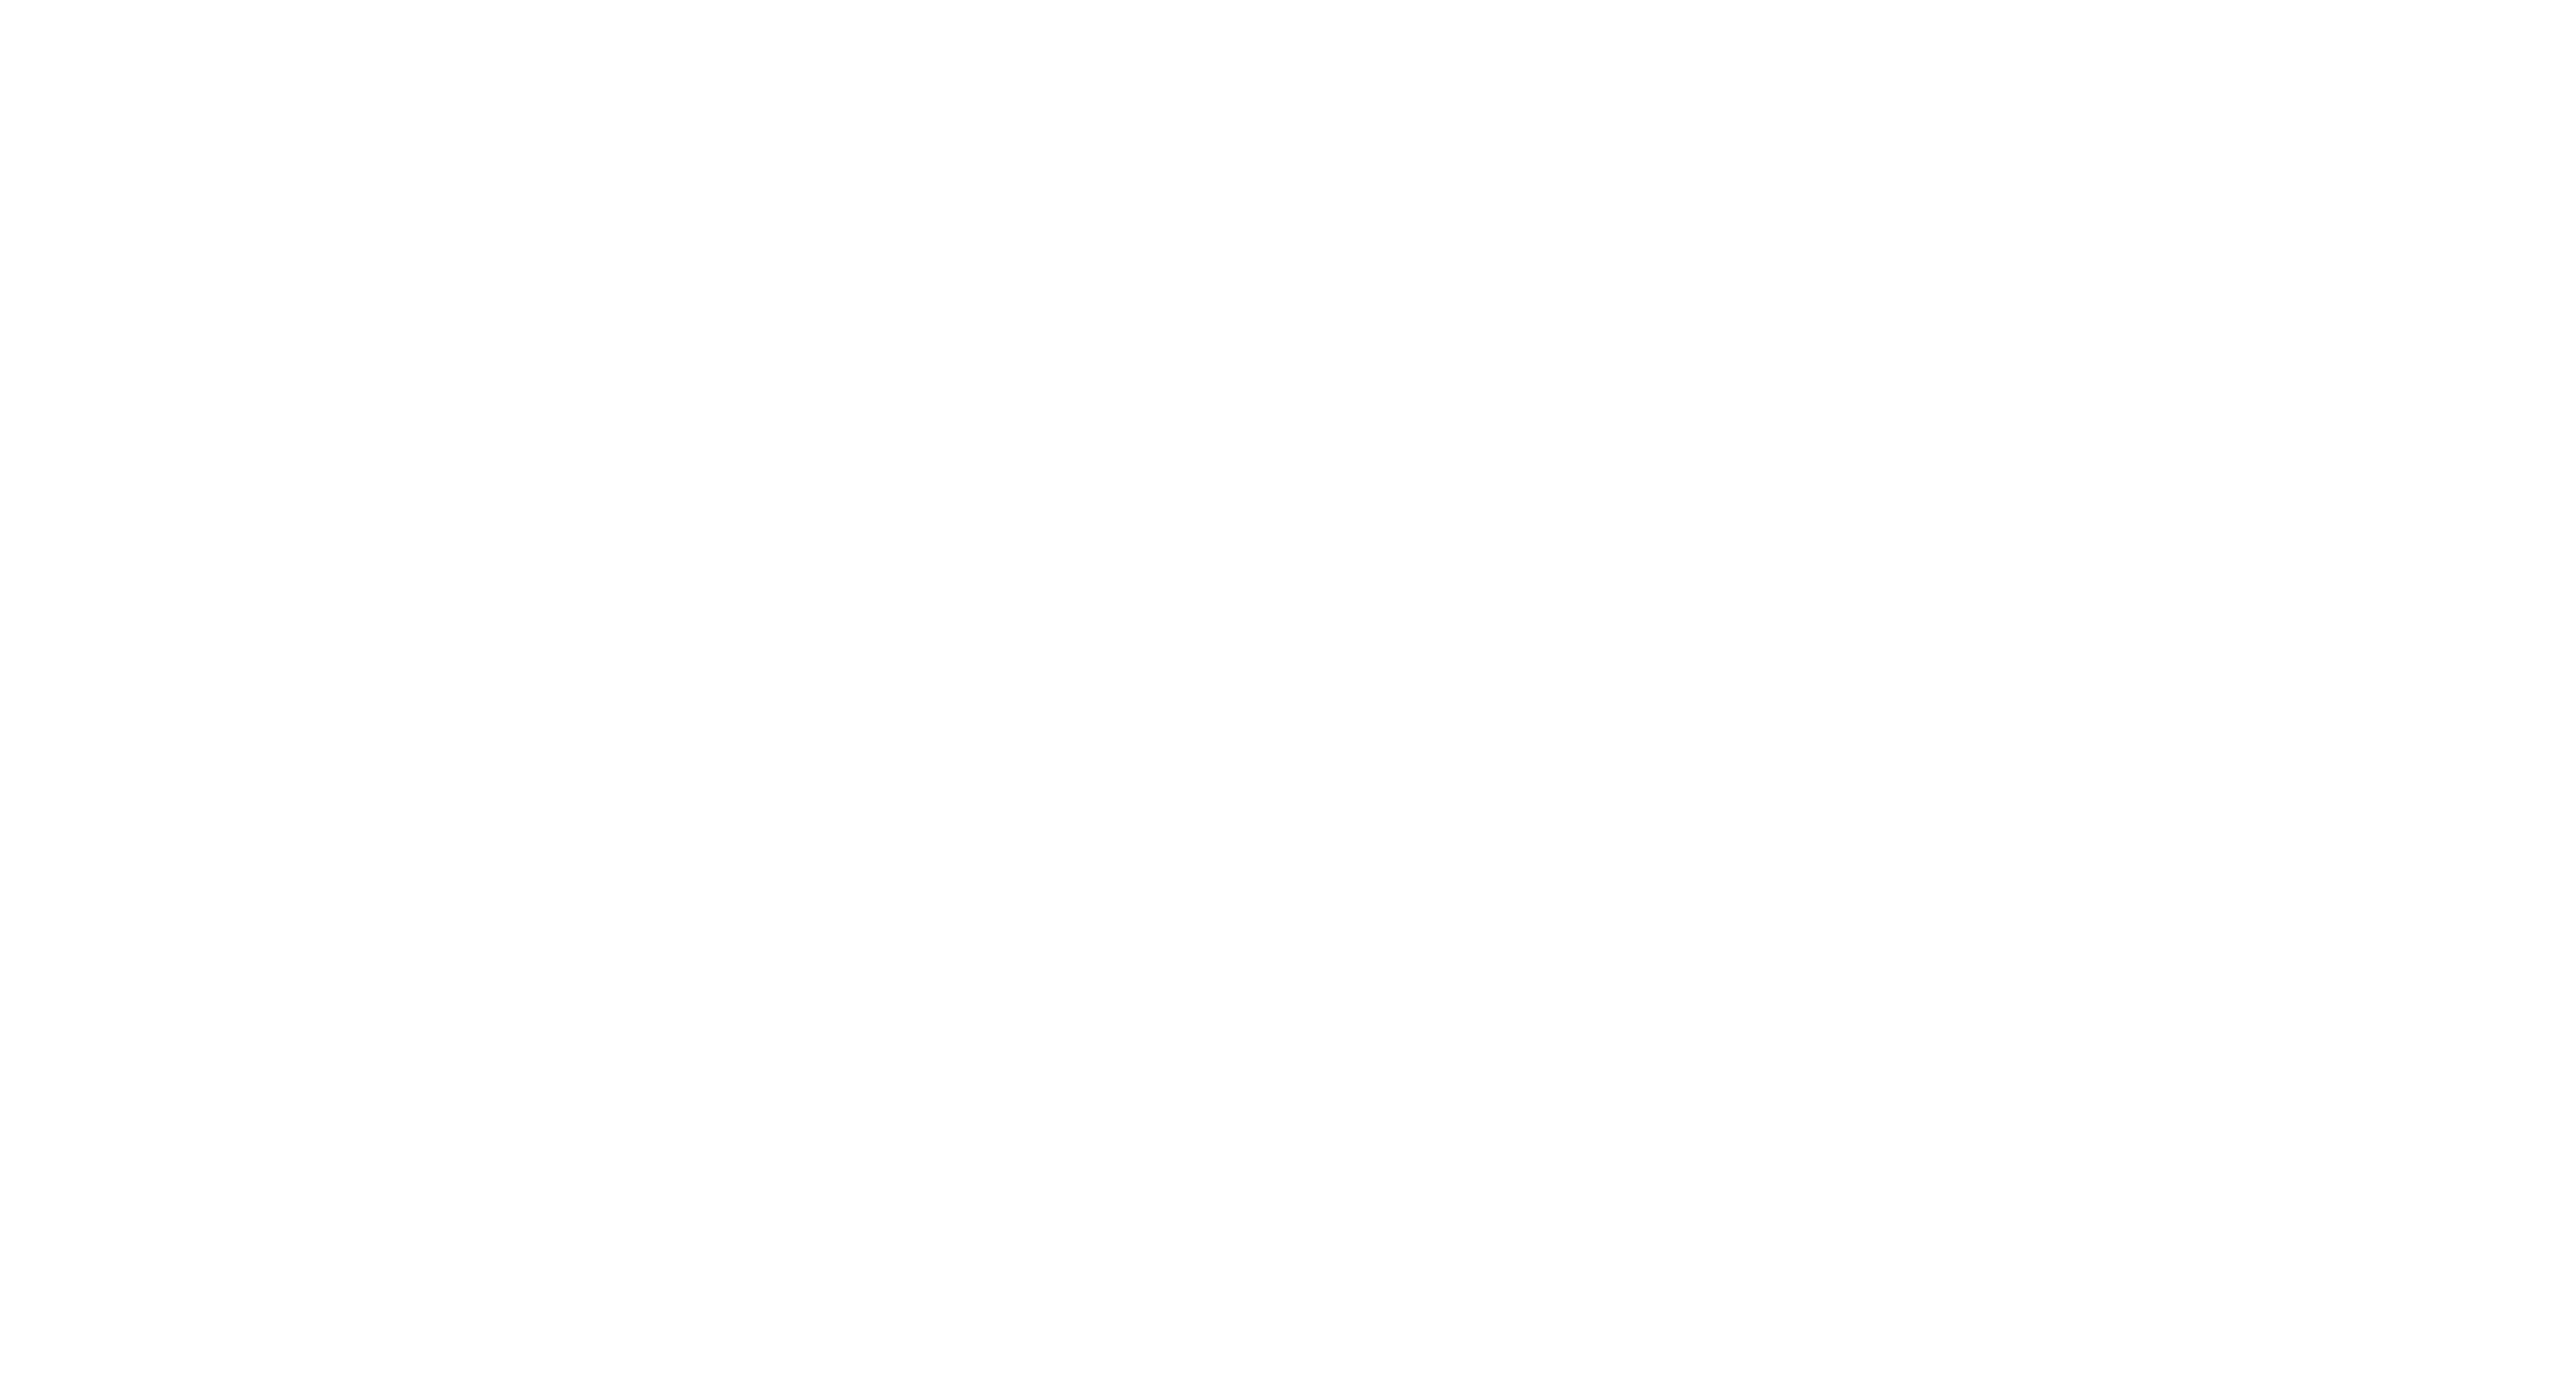 Fussy logo